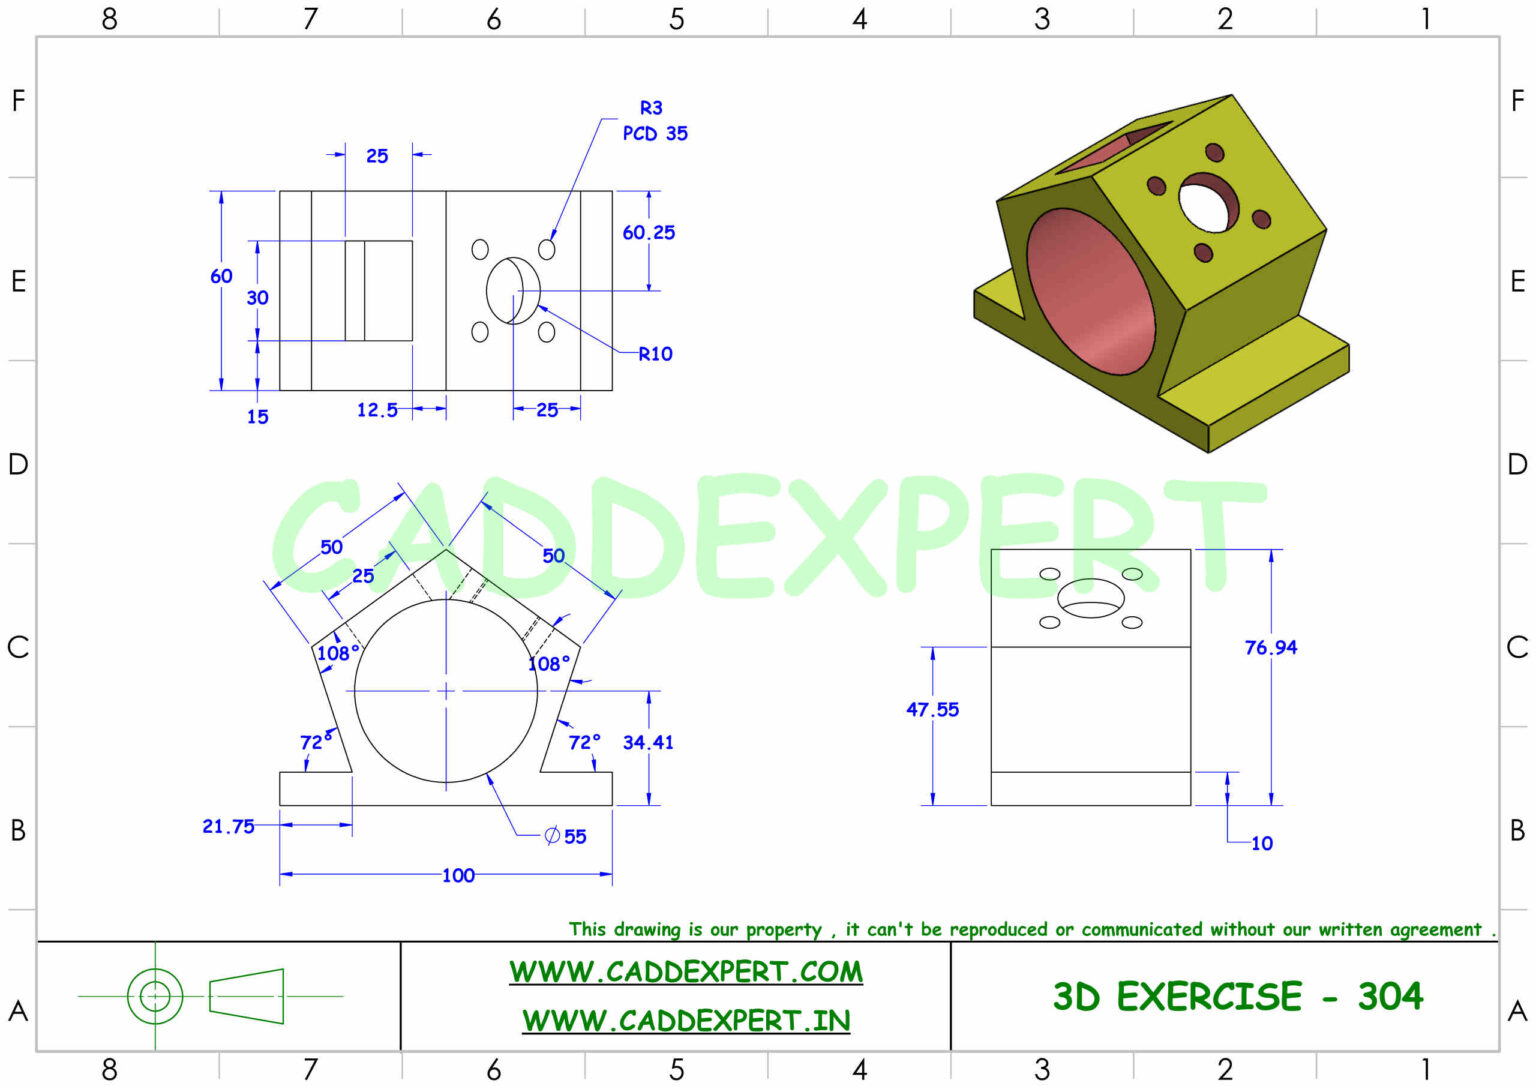 3D DRAWING EXERCISE - CADDEXPERT